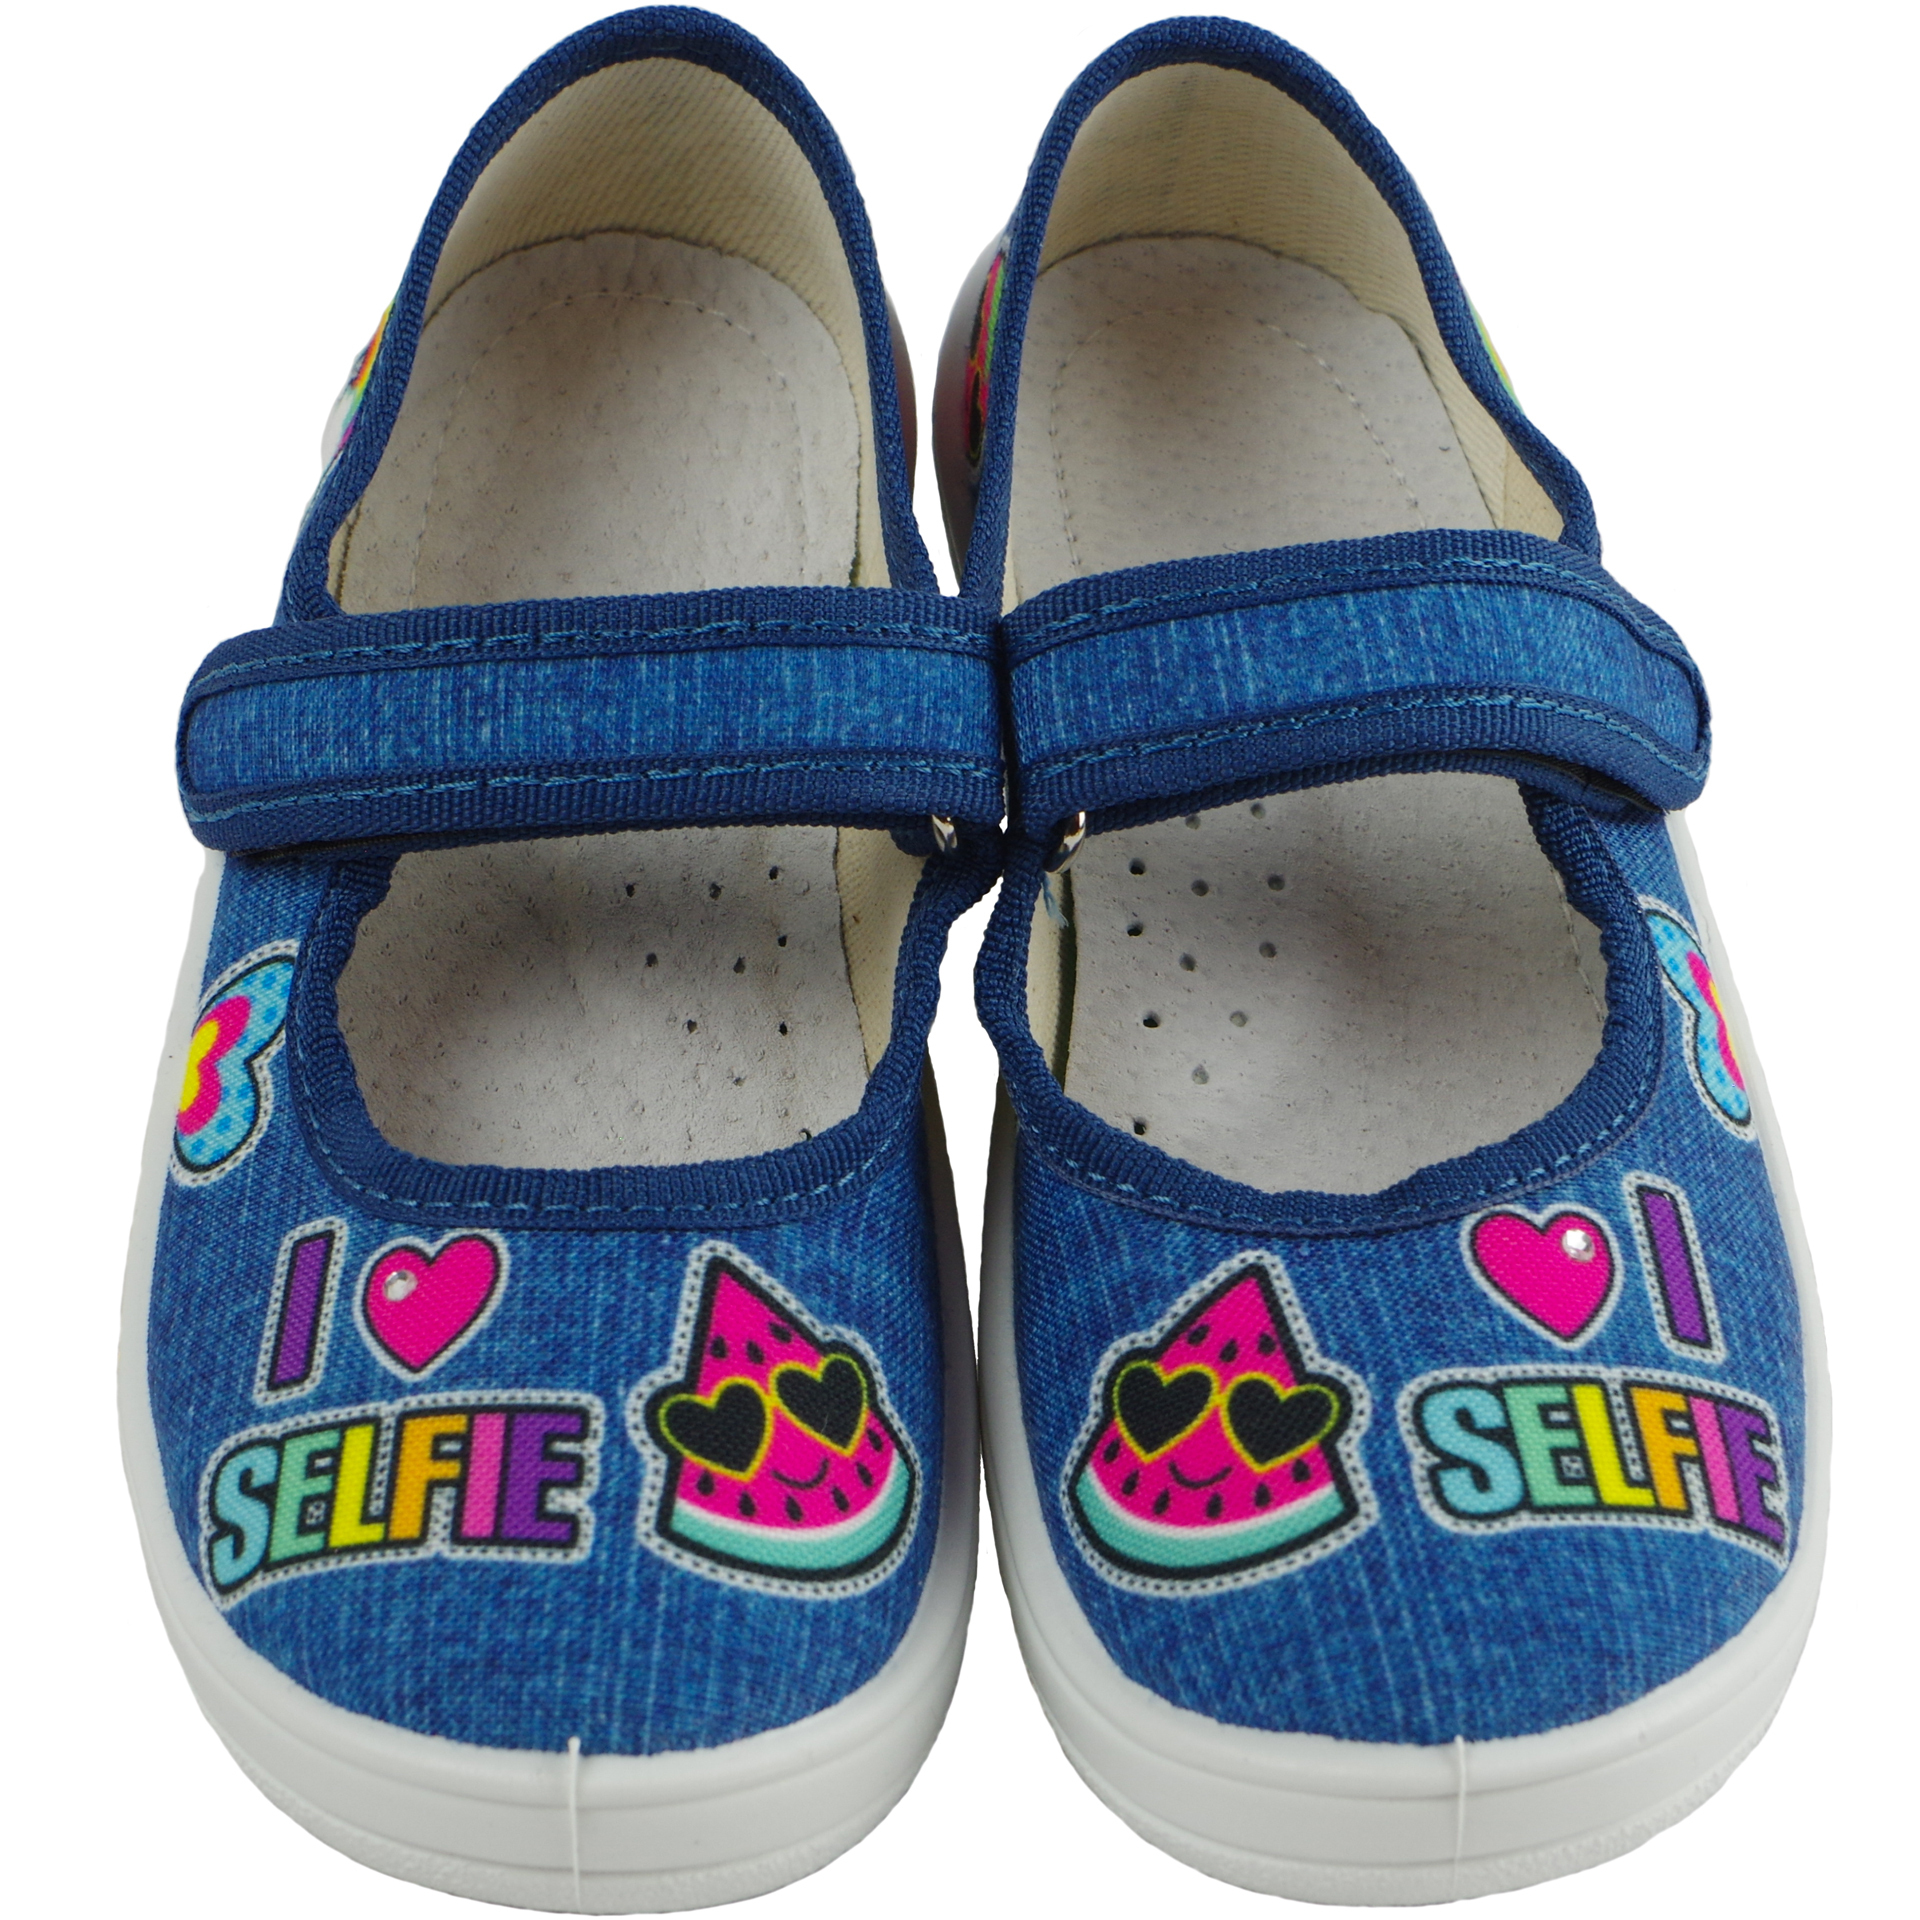 Текстильная обувь для девочек Тапочки Алина (1913) цвет Голубой 24-30 размеры – Sole Kids. Фото 3